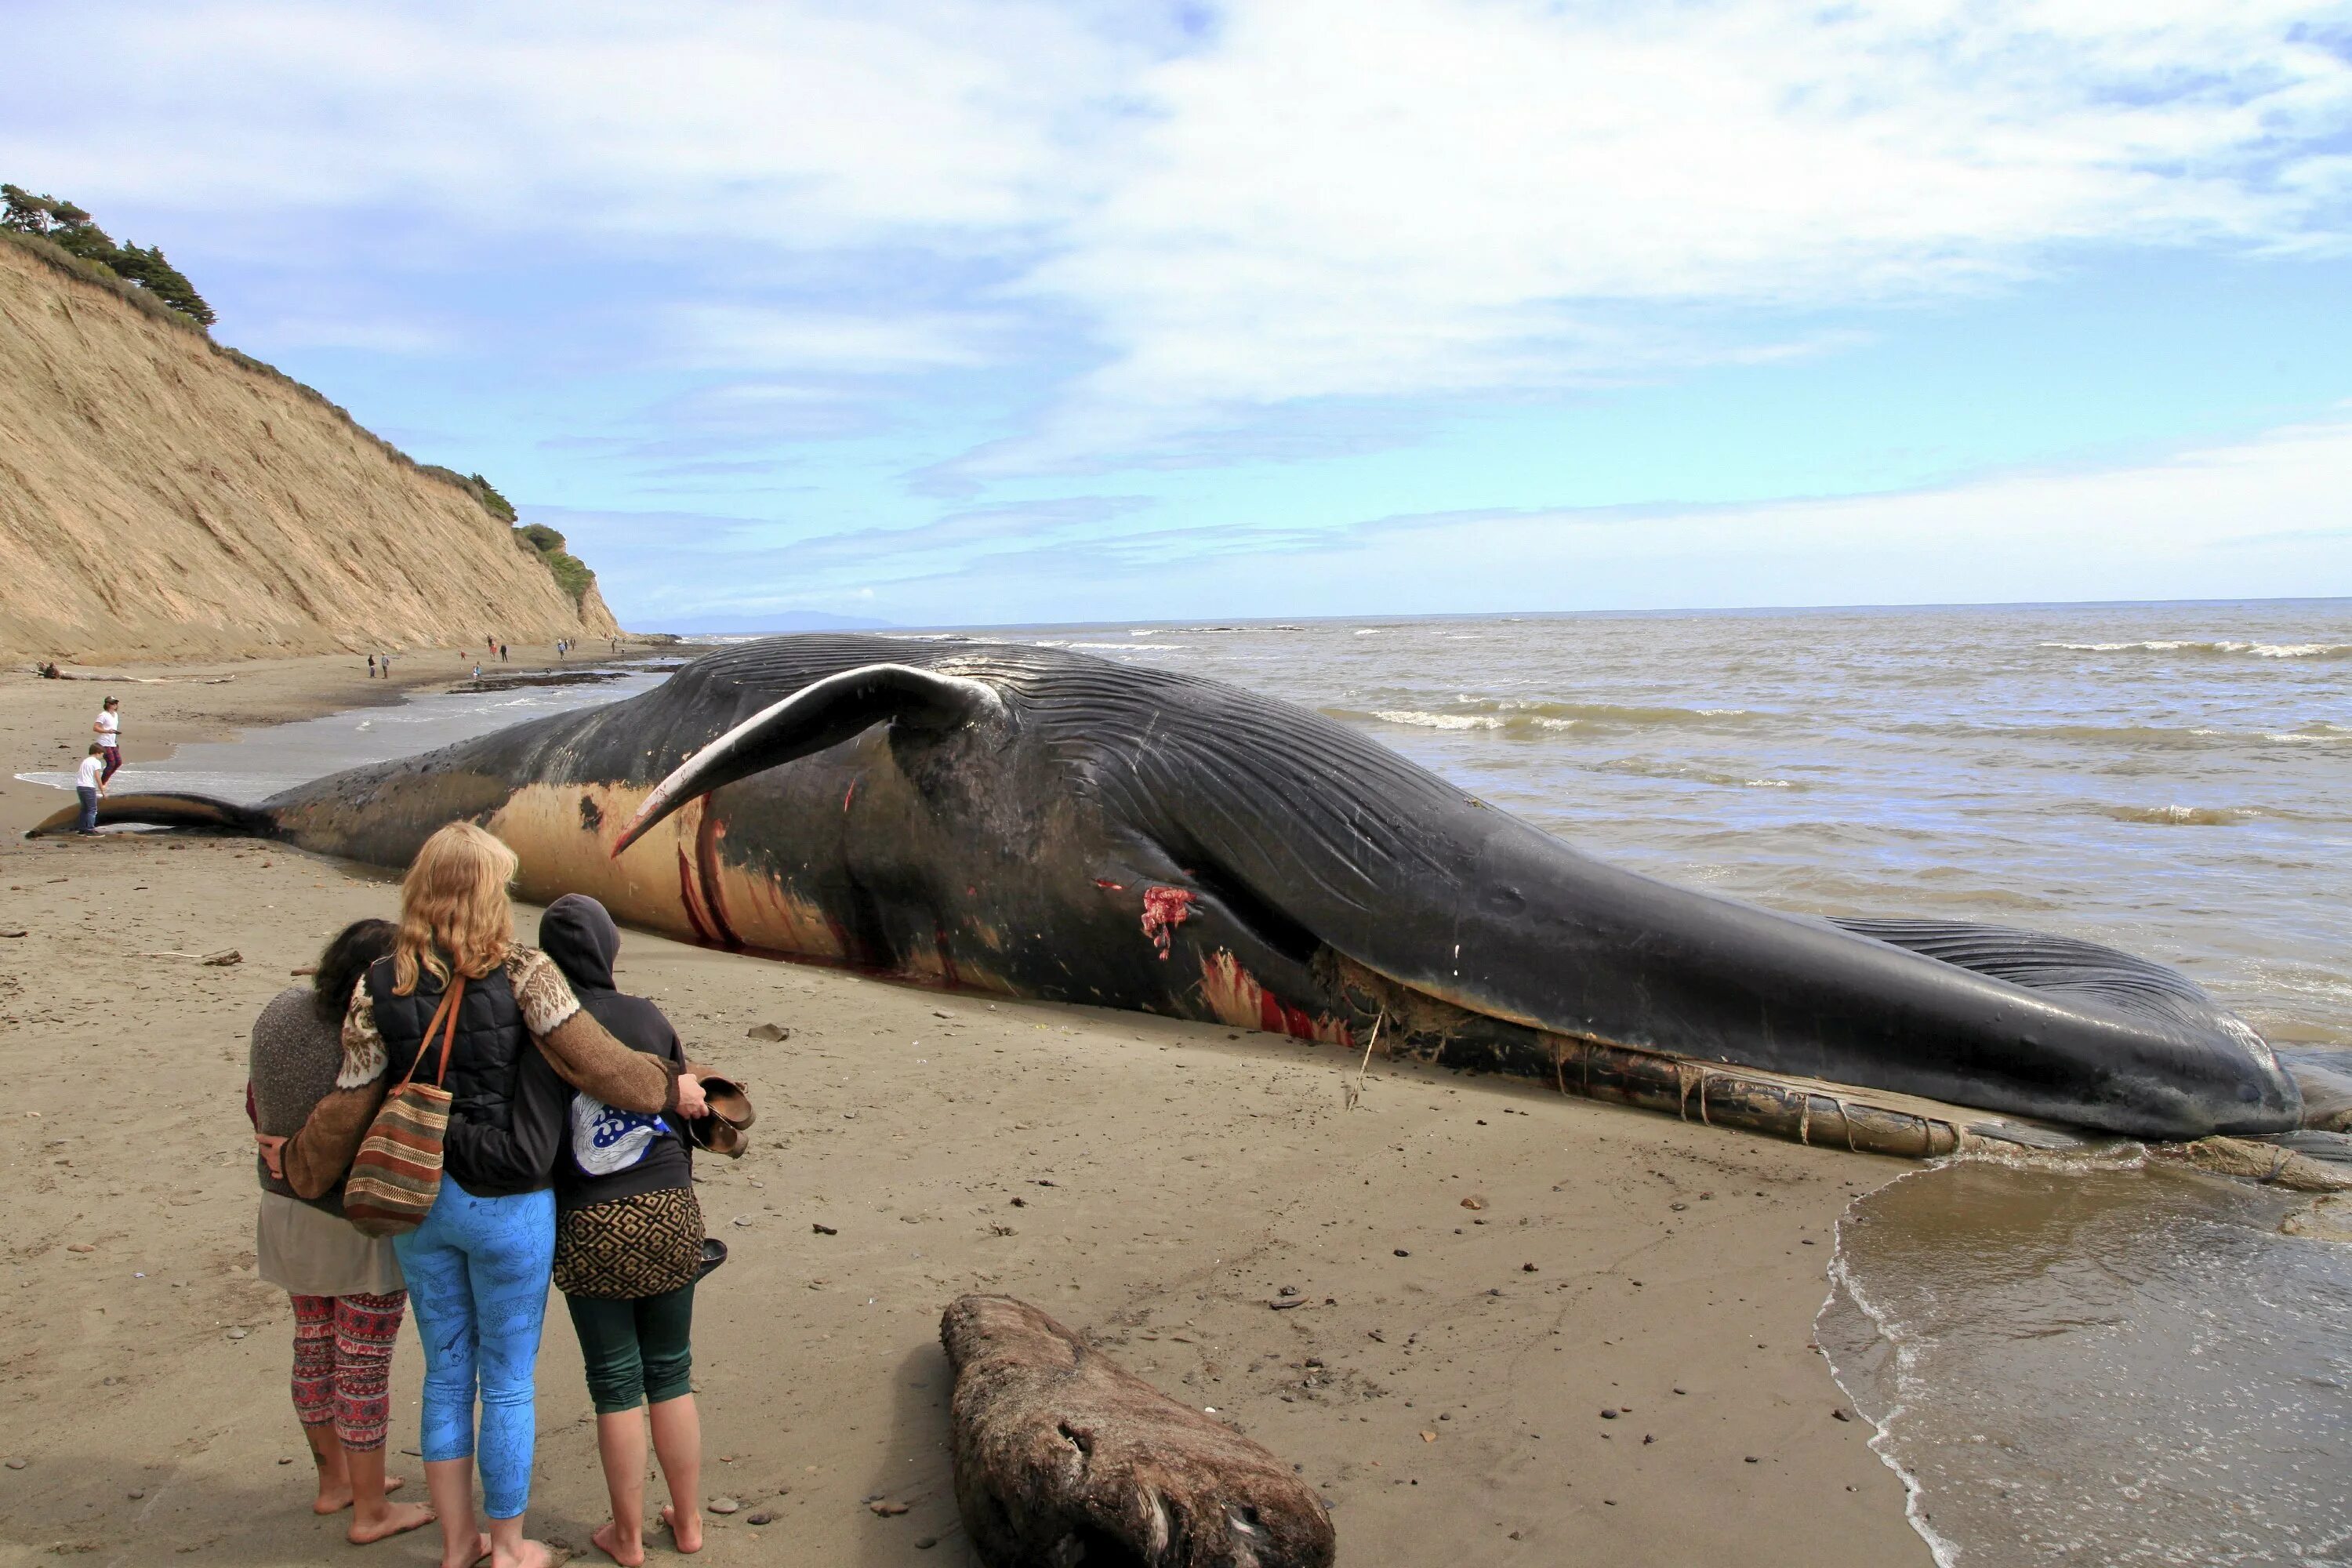 Кошелот. Исполинский кит. Синий кит 33 метра. Голубой кит Balaenoptera musculus. Голубой кит 33 метра.